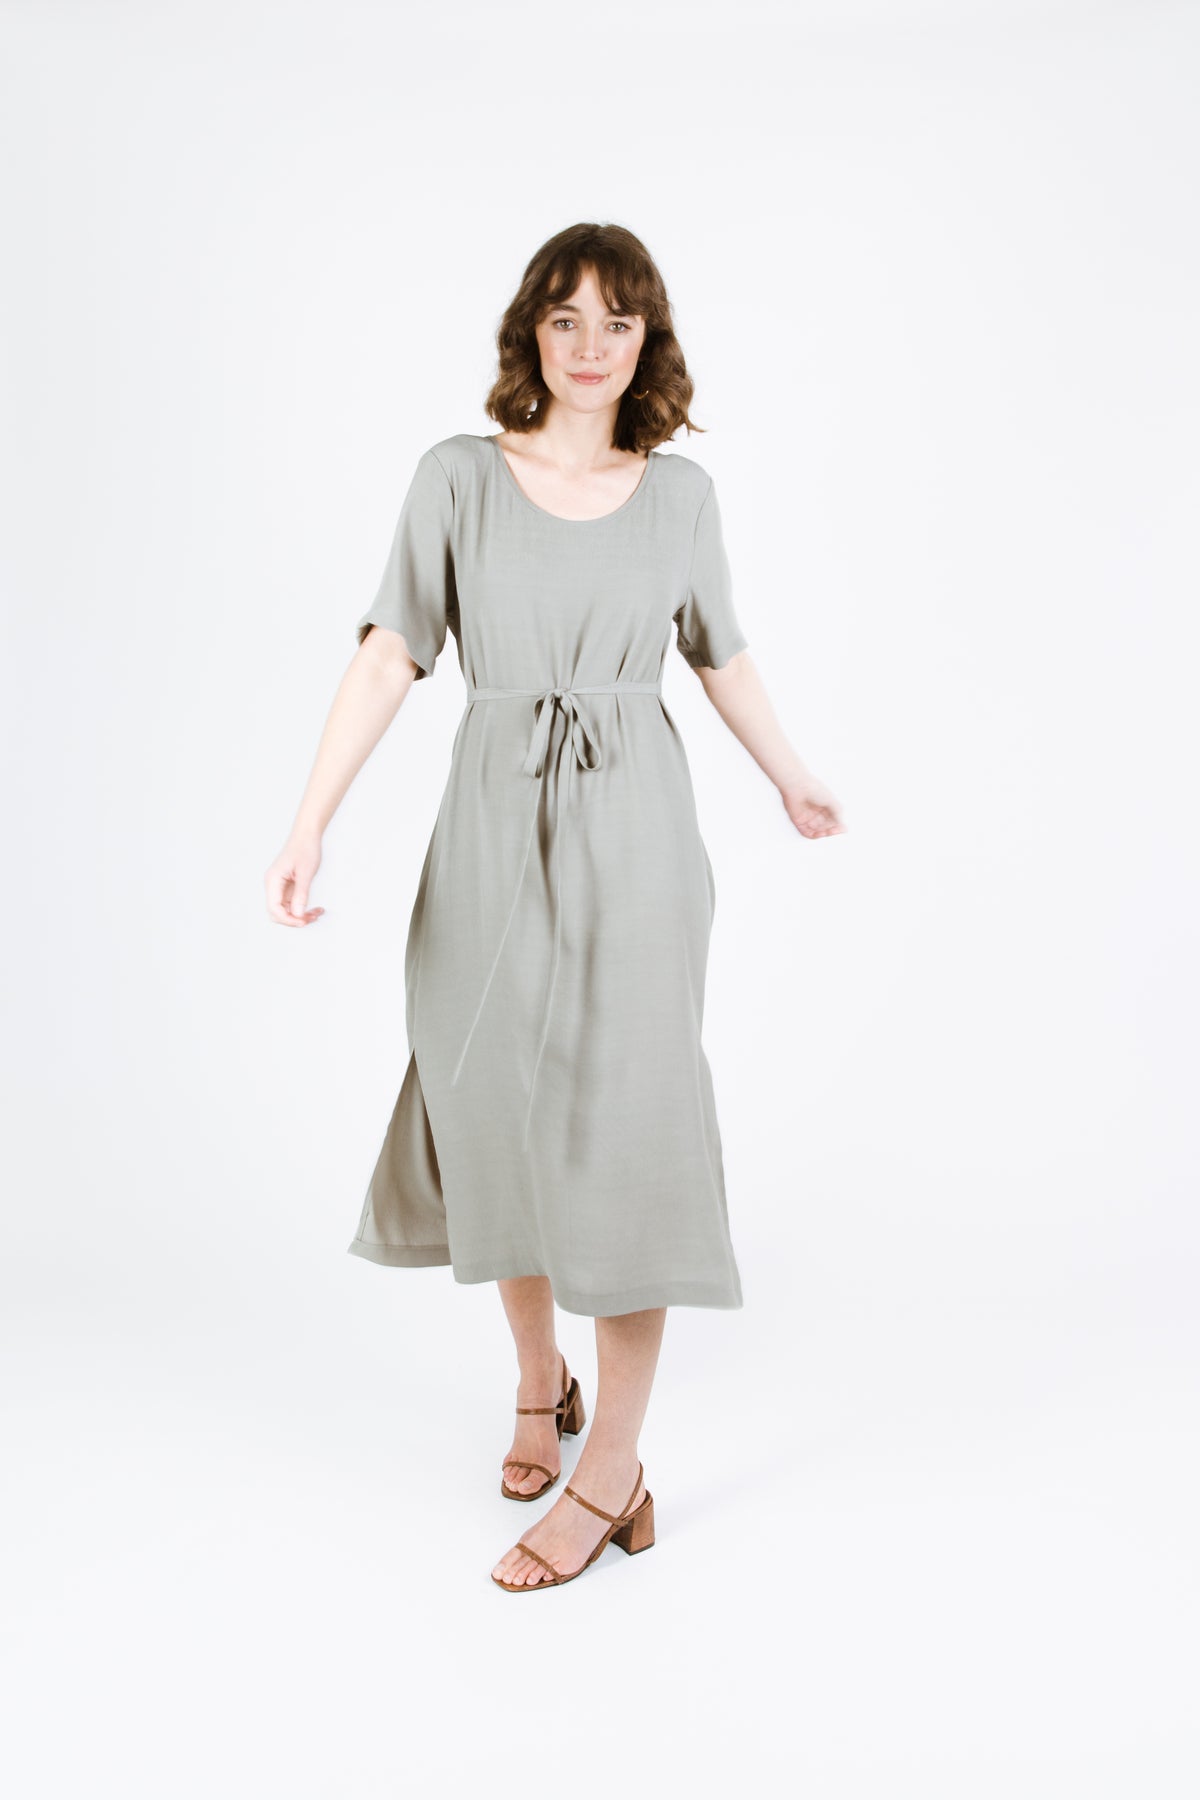 Tide Dress / Top - Size 1-8